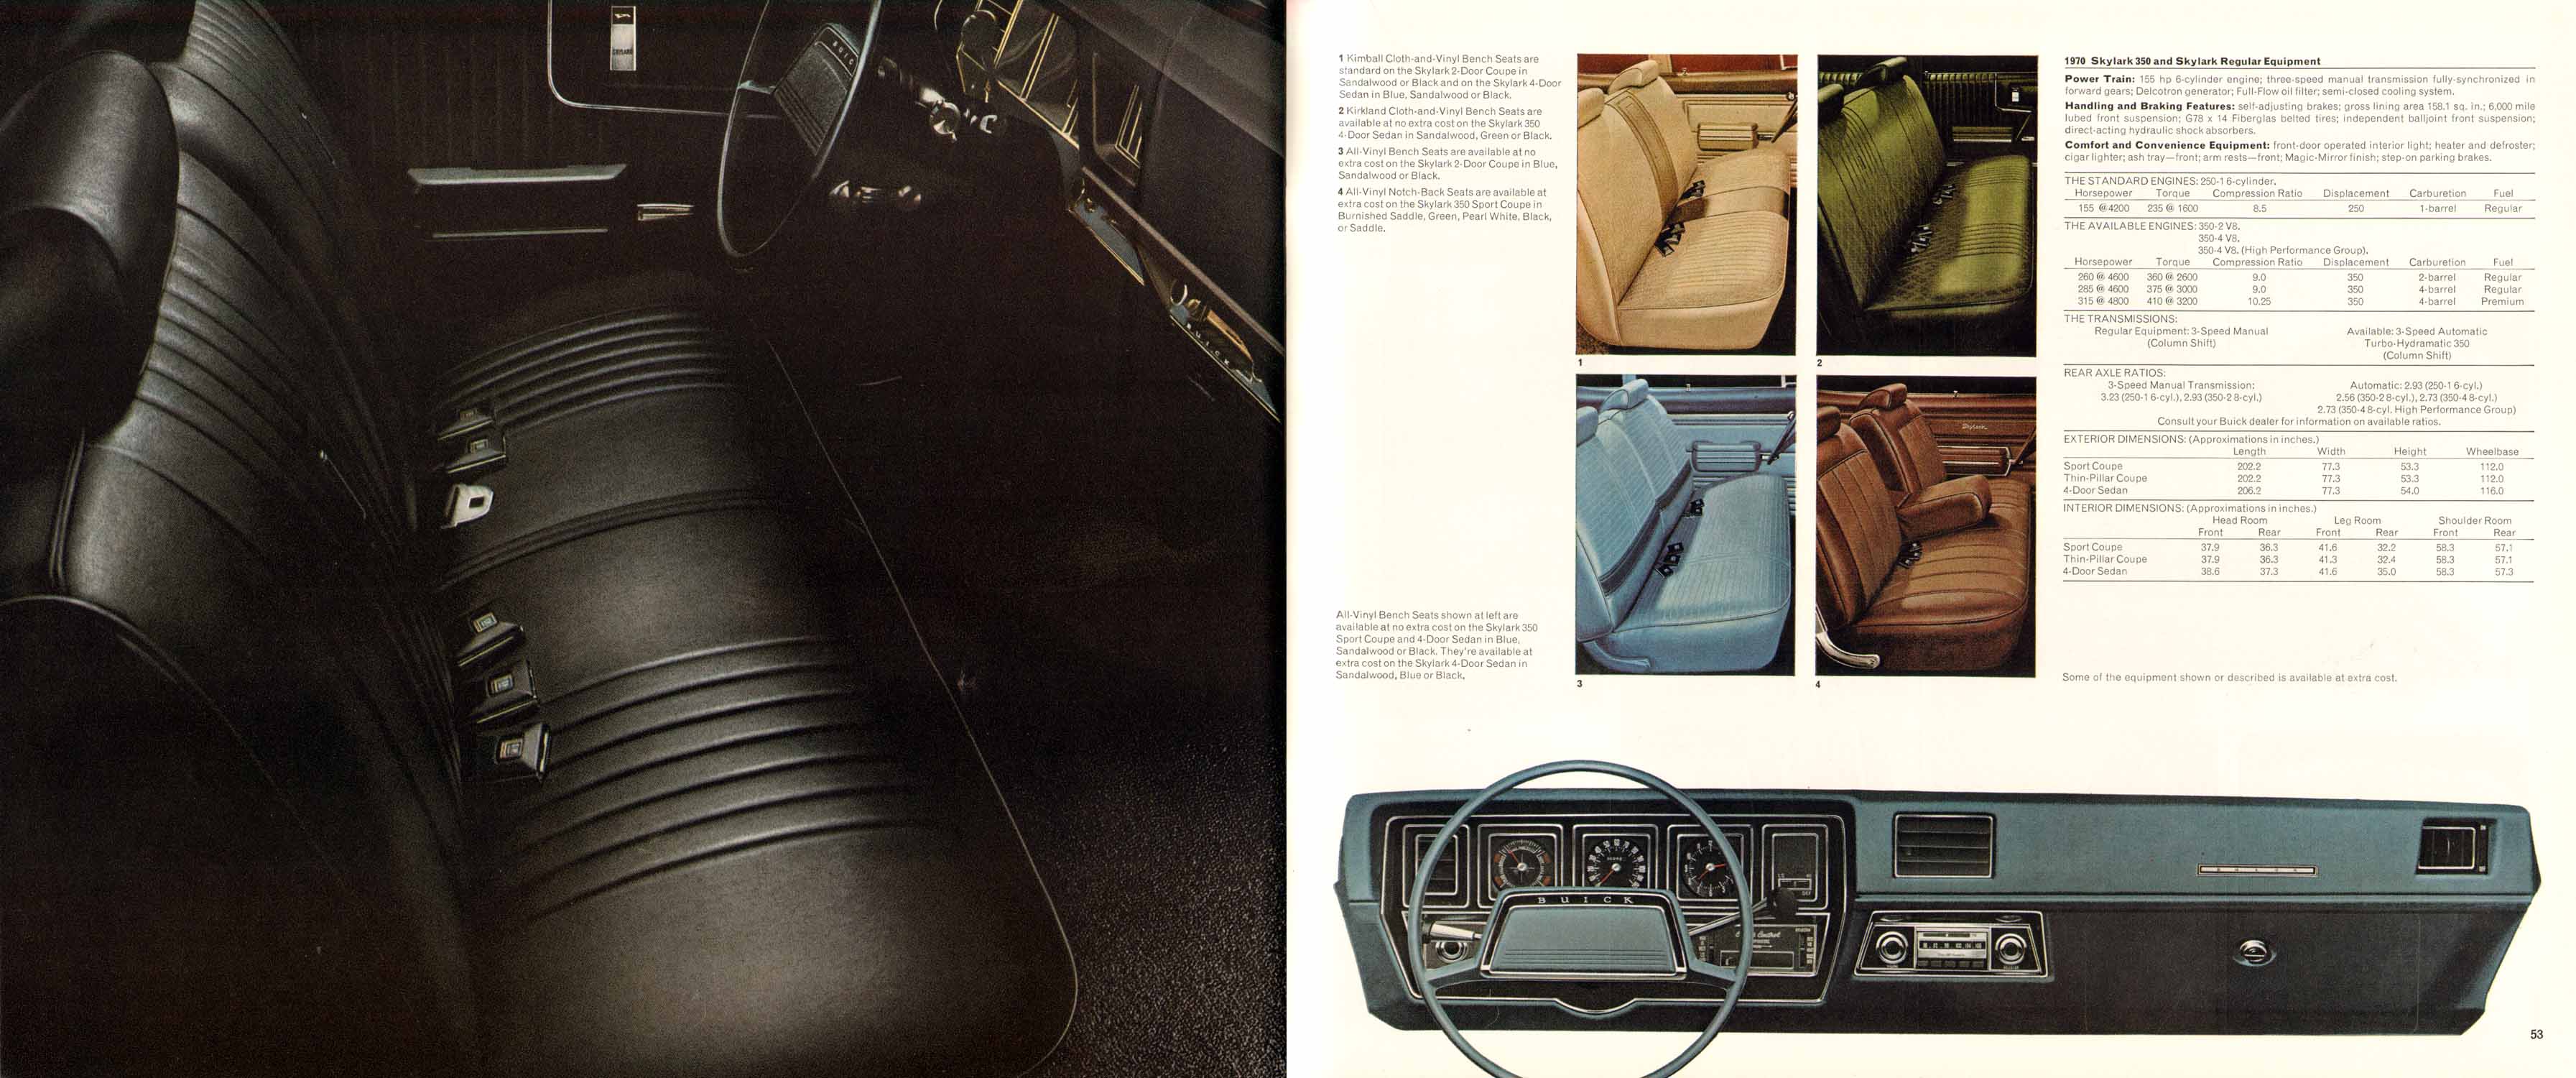 1970 Buick Full Line-52-53